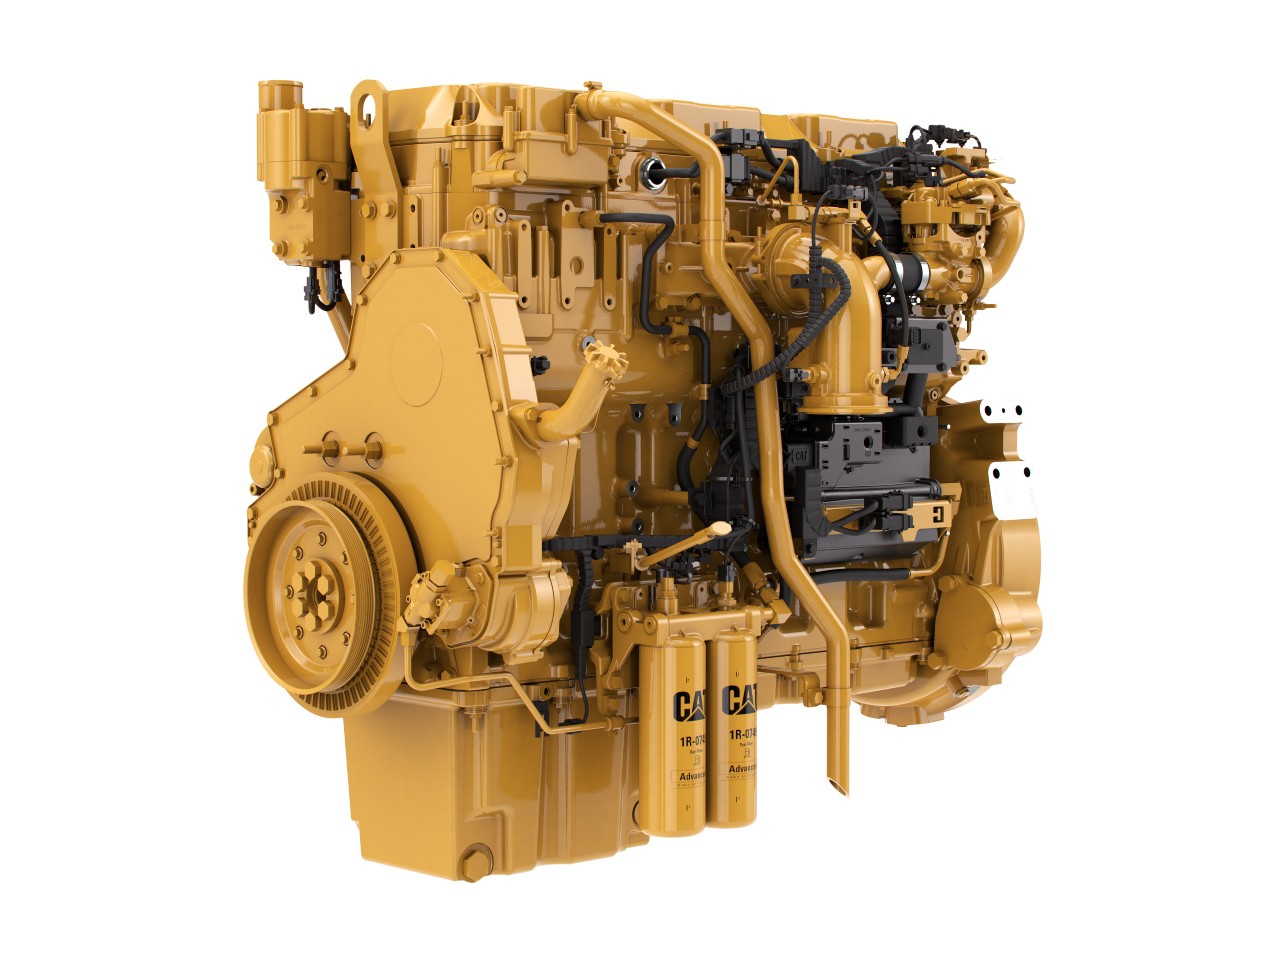 Priemyslený motor Cat C13B - 340-430 kW